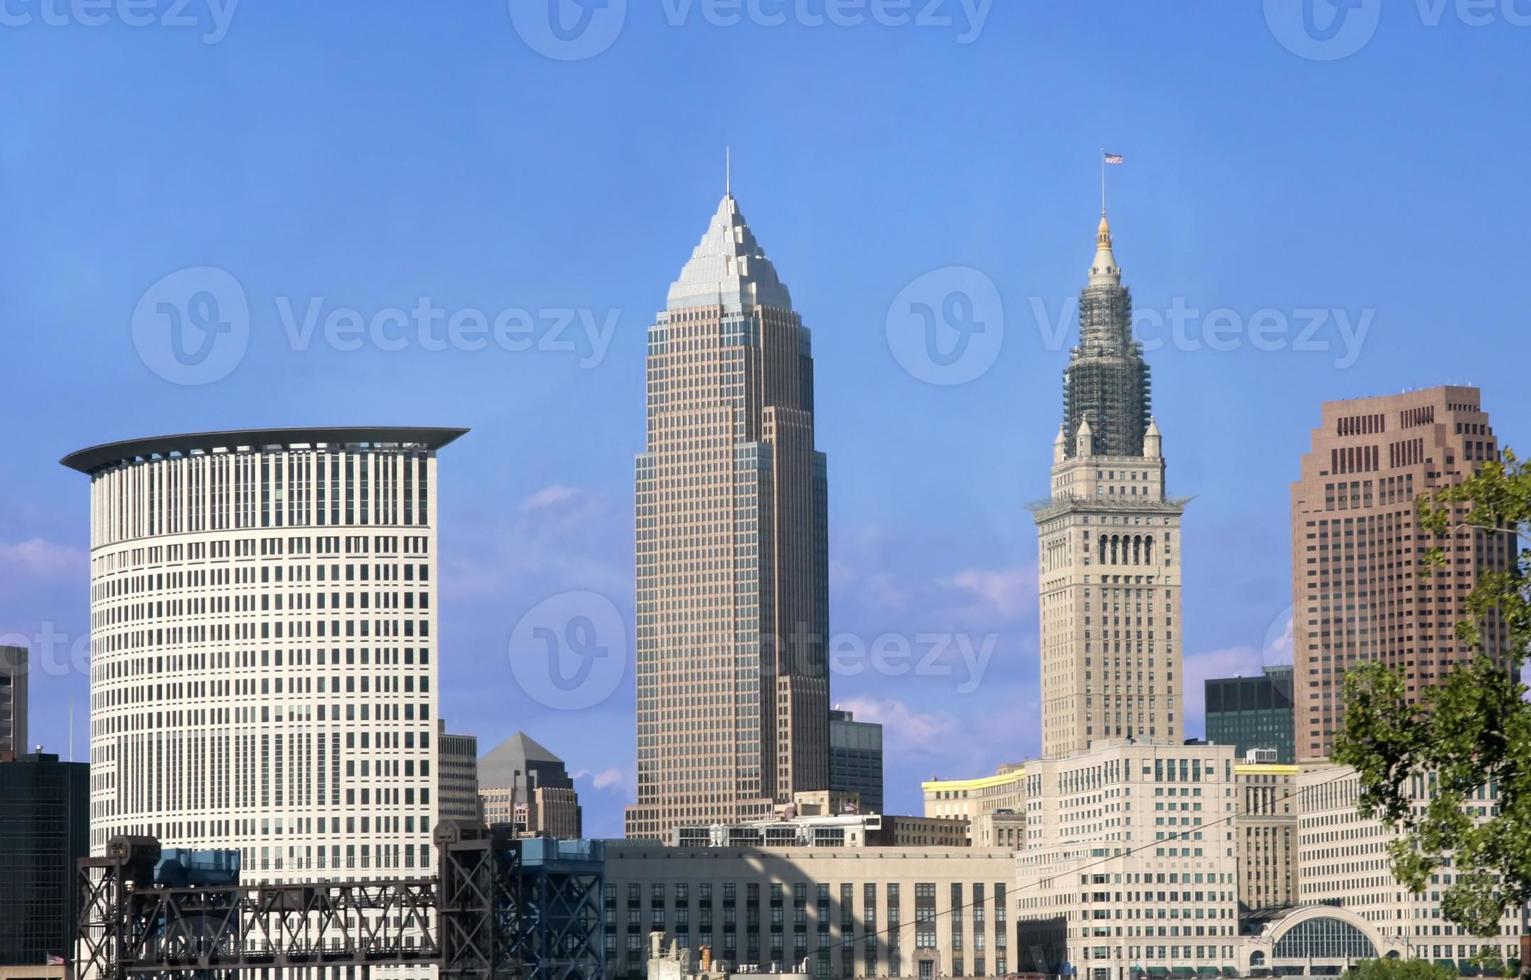 Cleveland, Ohio photo